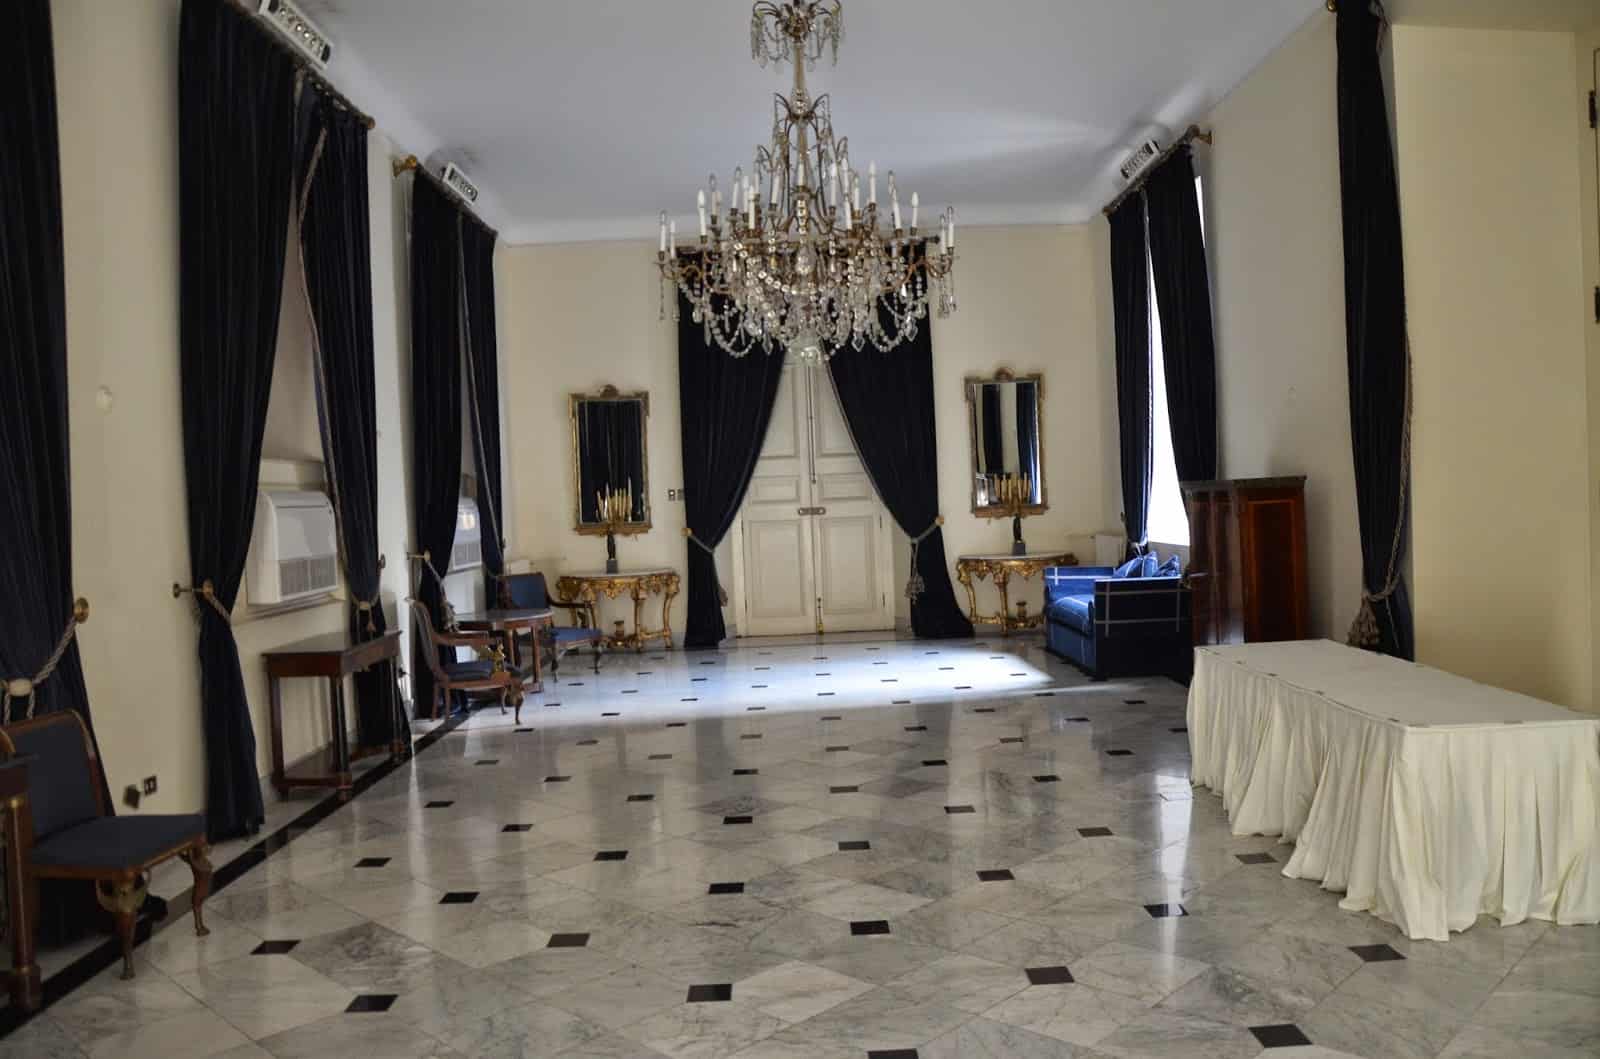 Salón O’Higgins at Palacio de La Moneda in Santiago de Chile